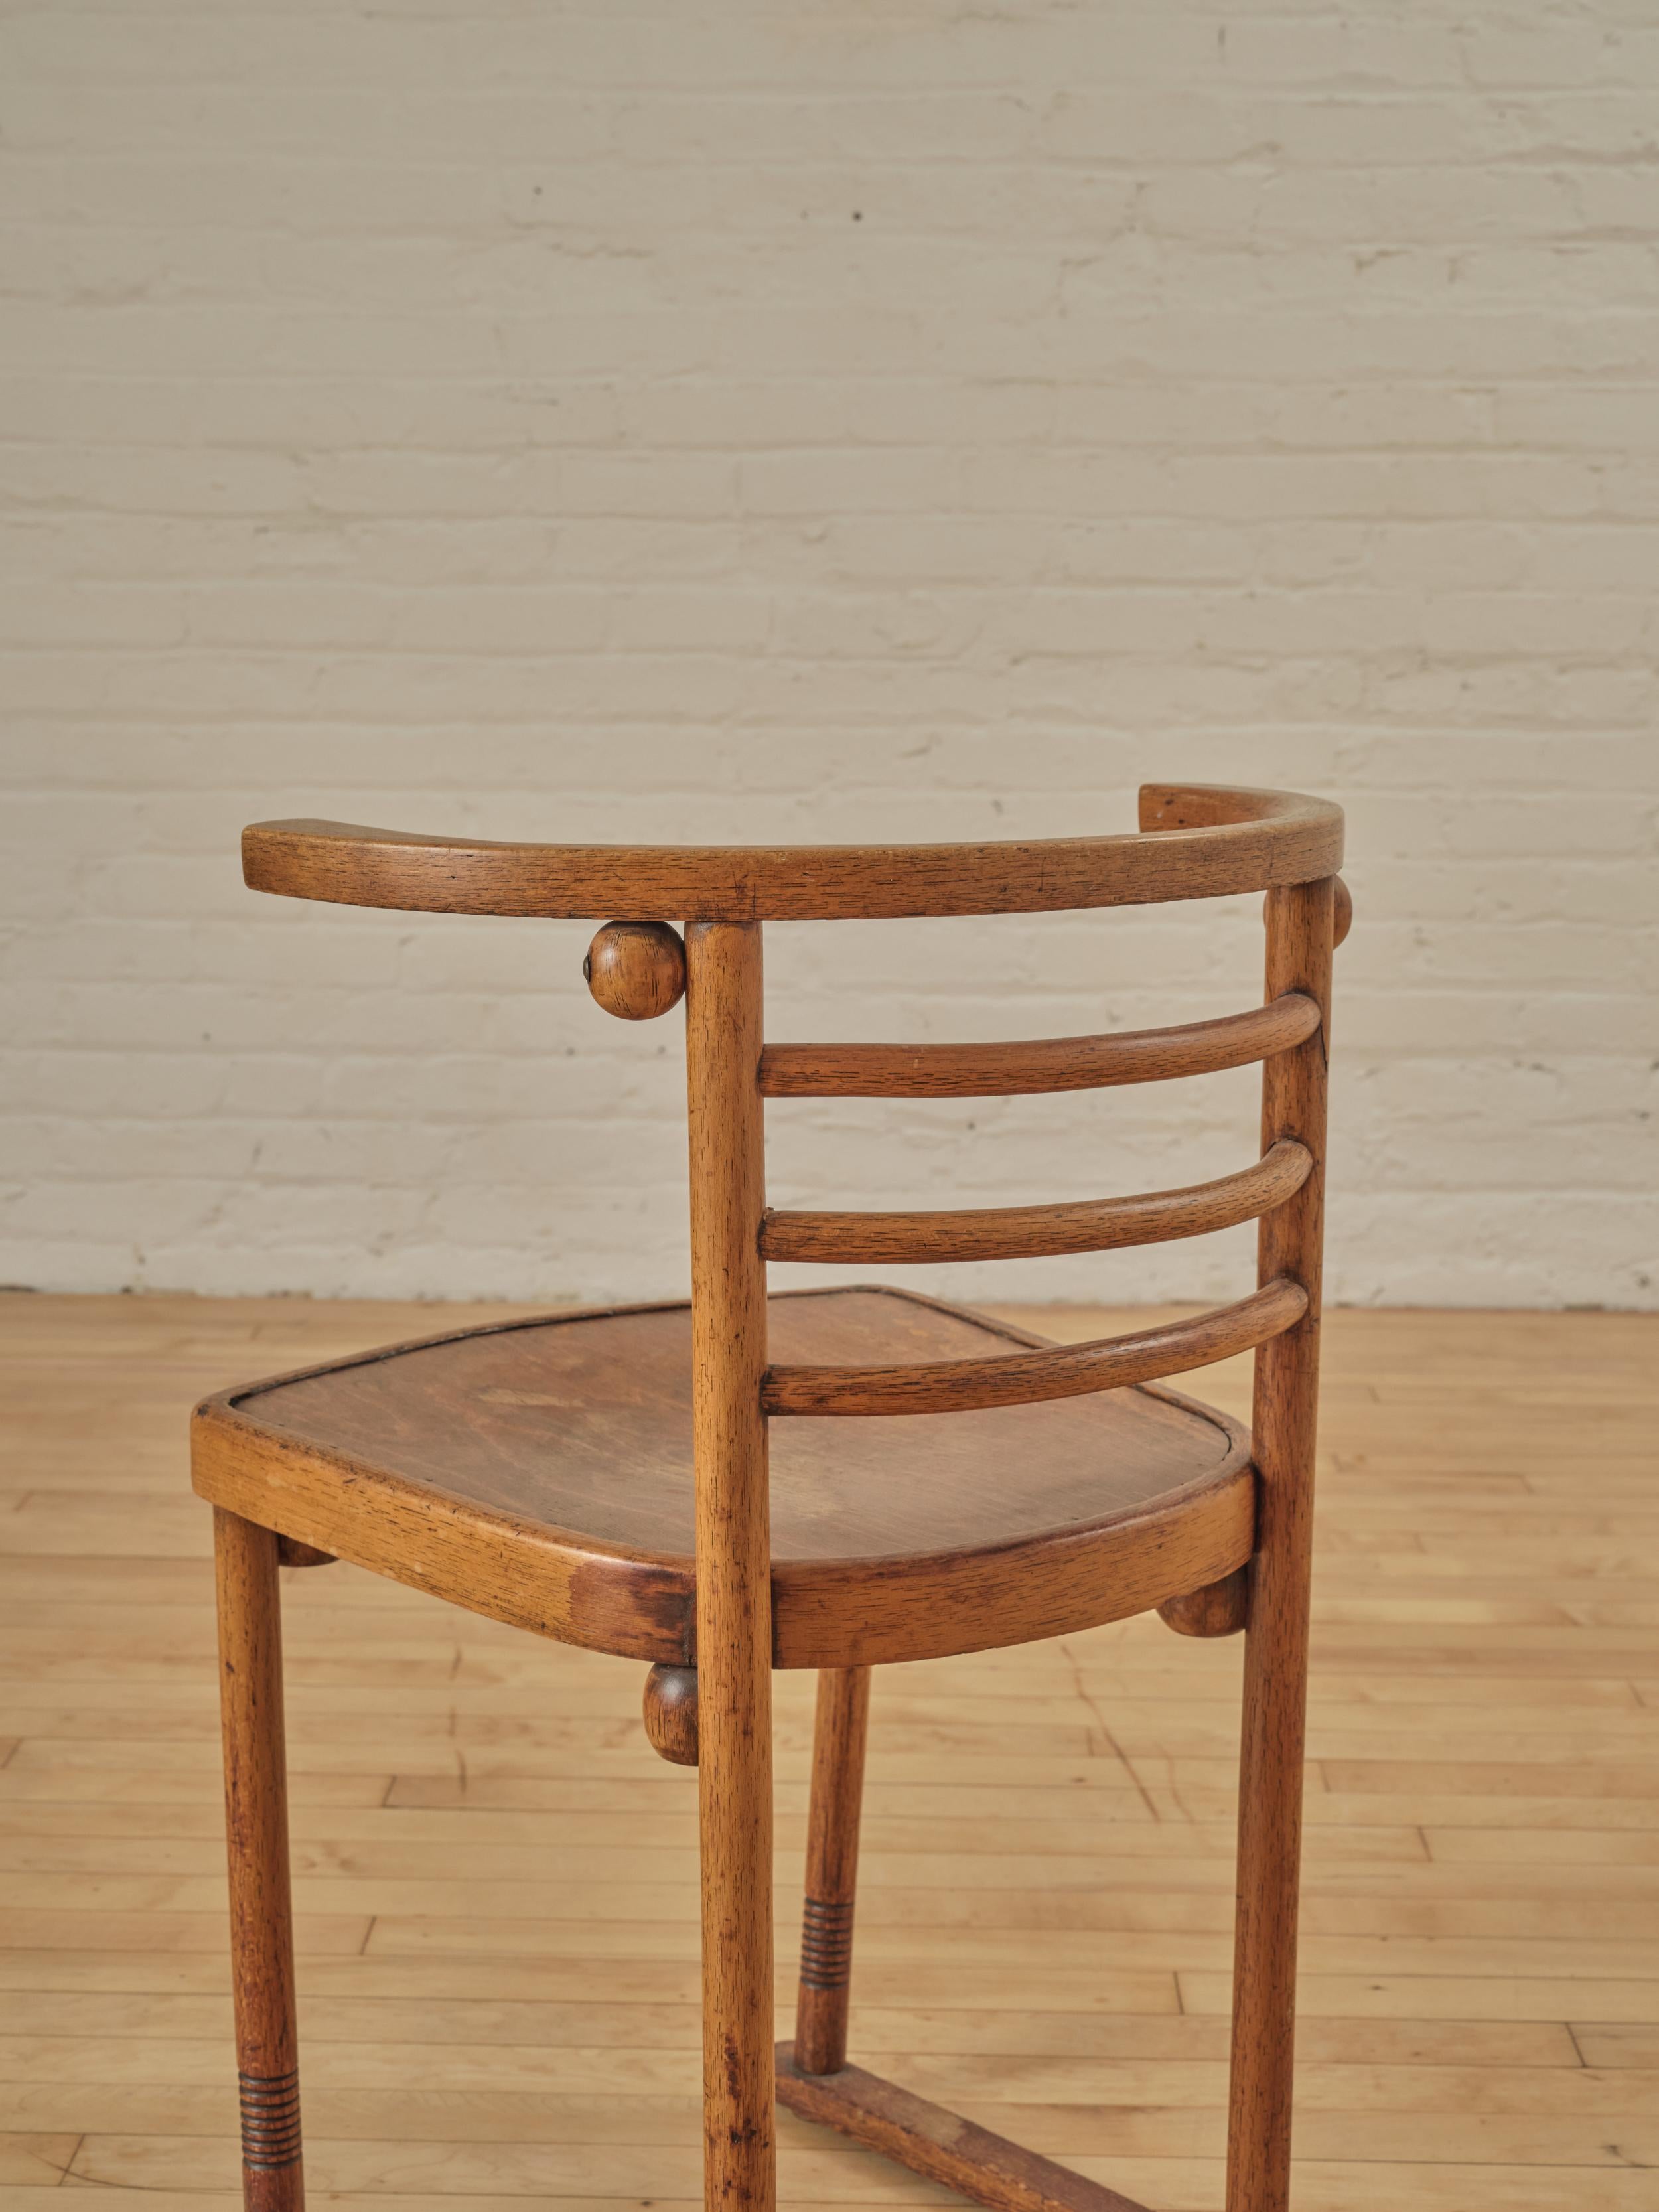 Fledermaus Chair by Josef Hoffman (Model 728) For Sale 1